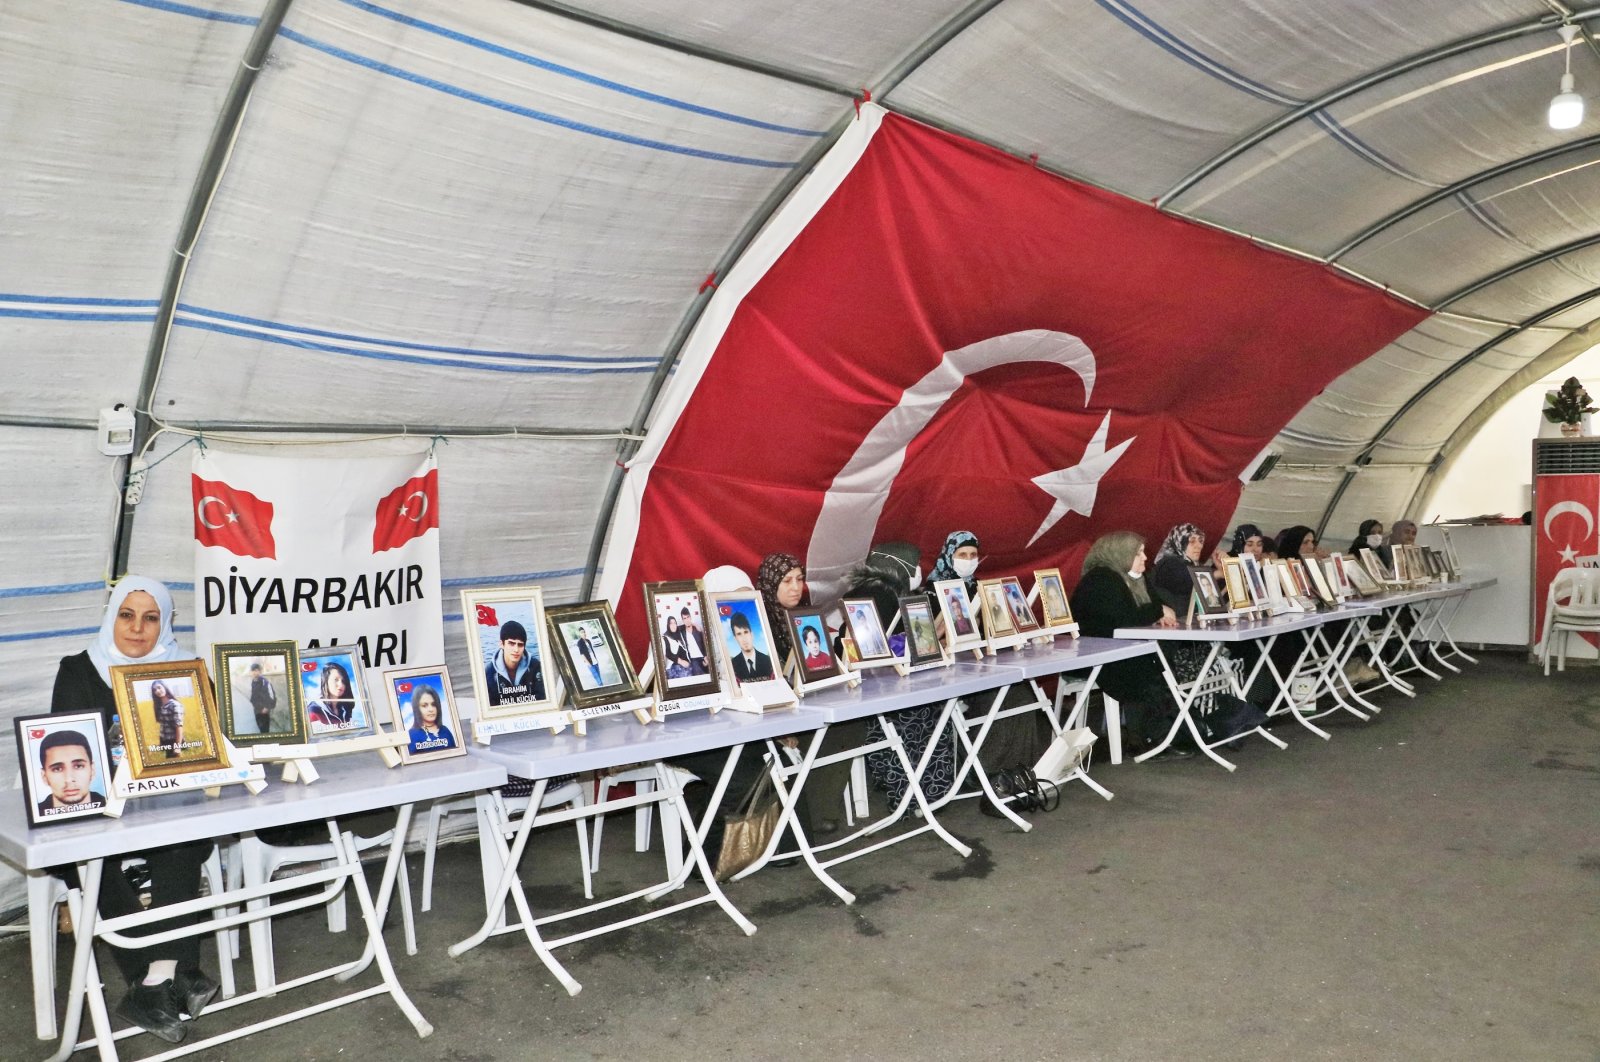 2 keluarga lagi bergabung dengan protes anti-PKK Diyarbakır